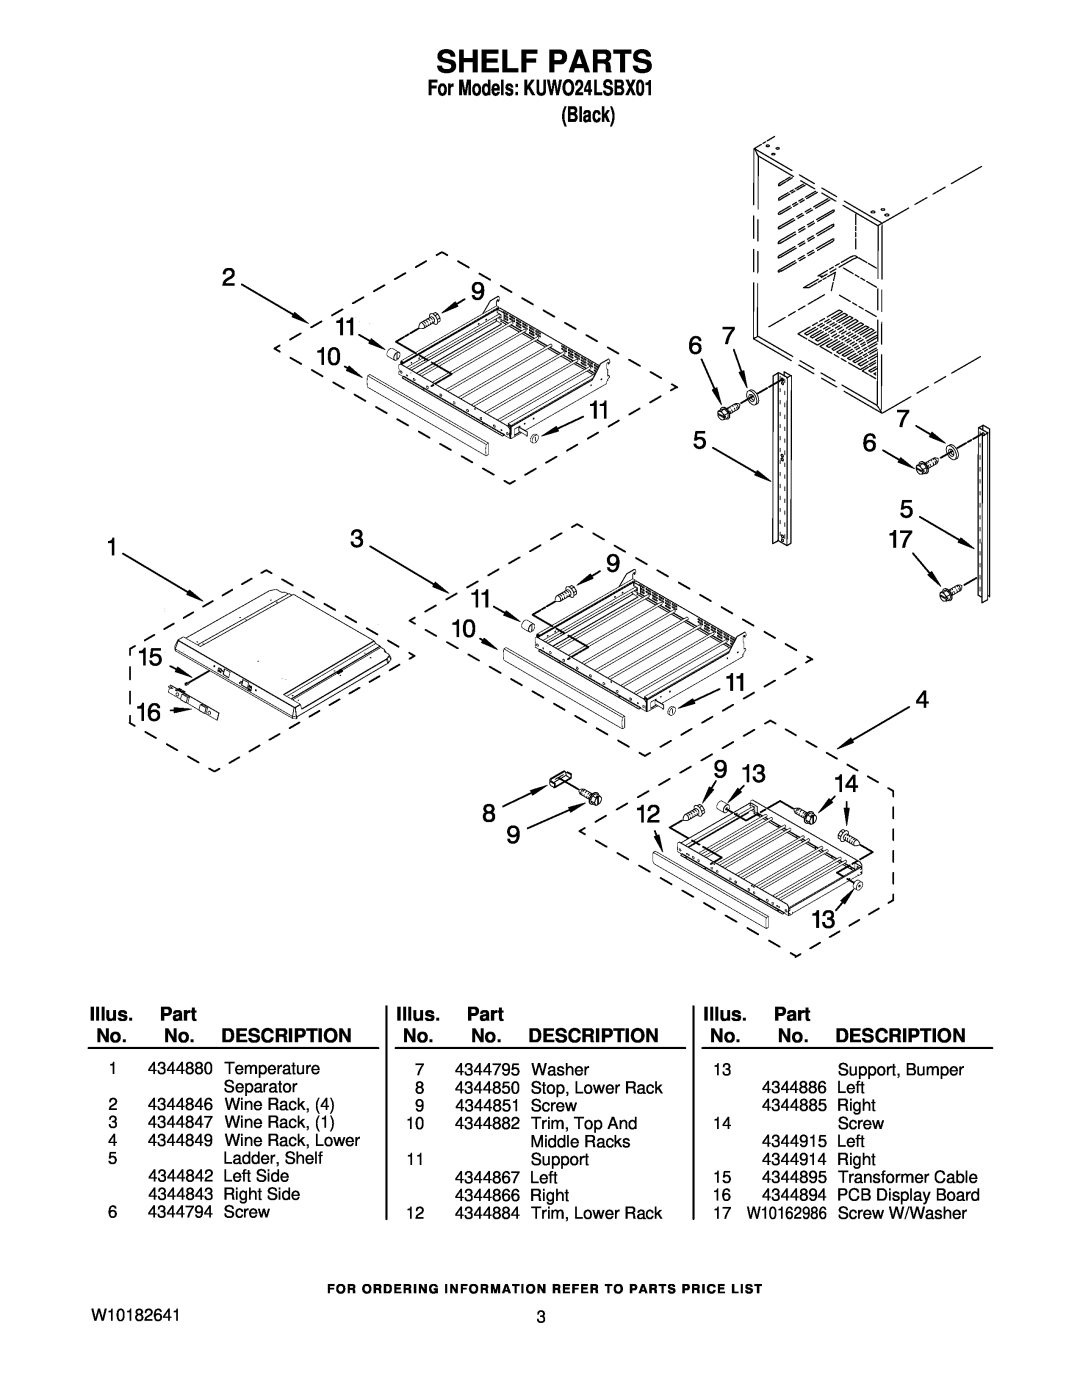 KitchenAid KUWO24LSBX01 manual Shelf Parts, Illus. Part No. No. DESCRIPTION 